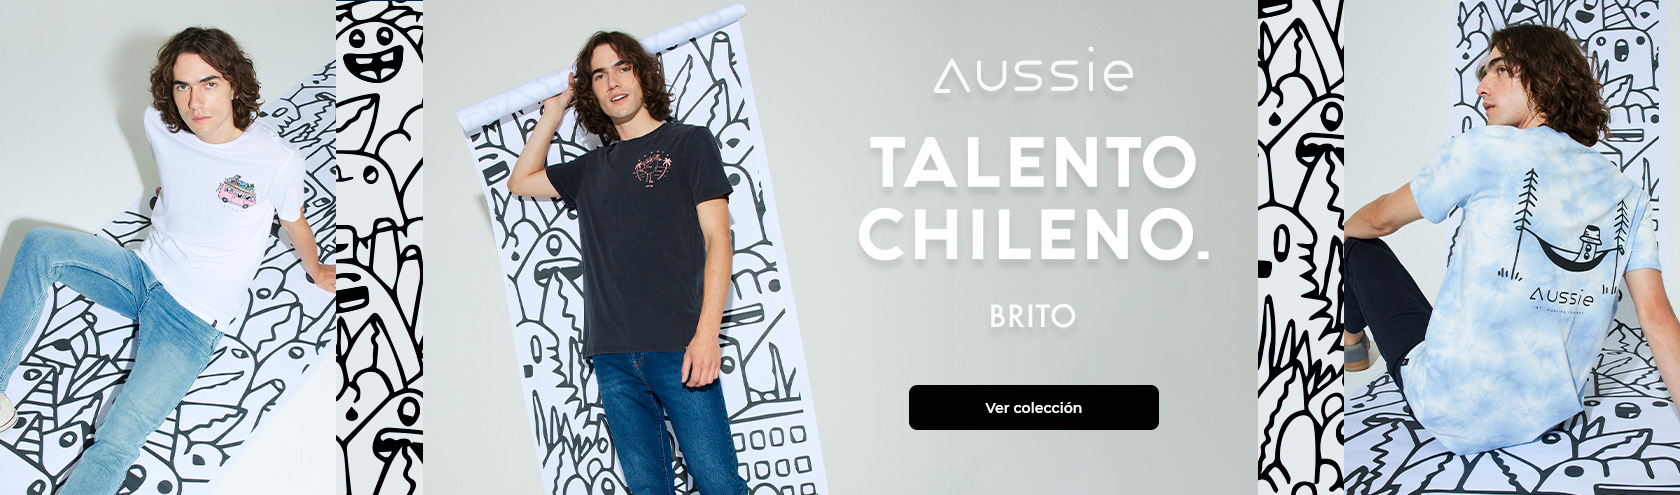 Talento Chileno: Aussie x Brito